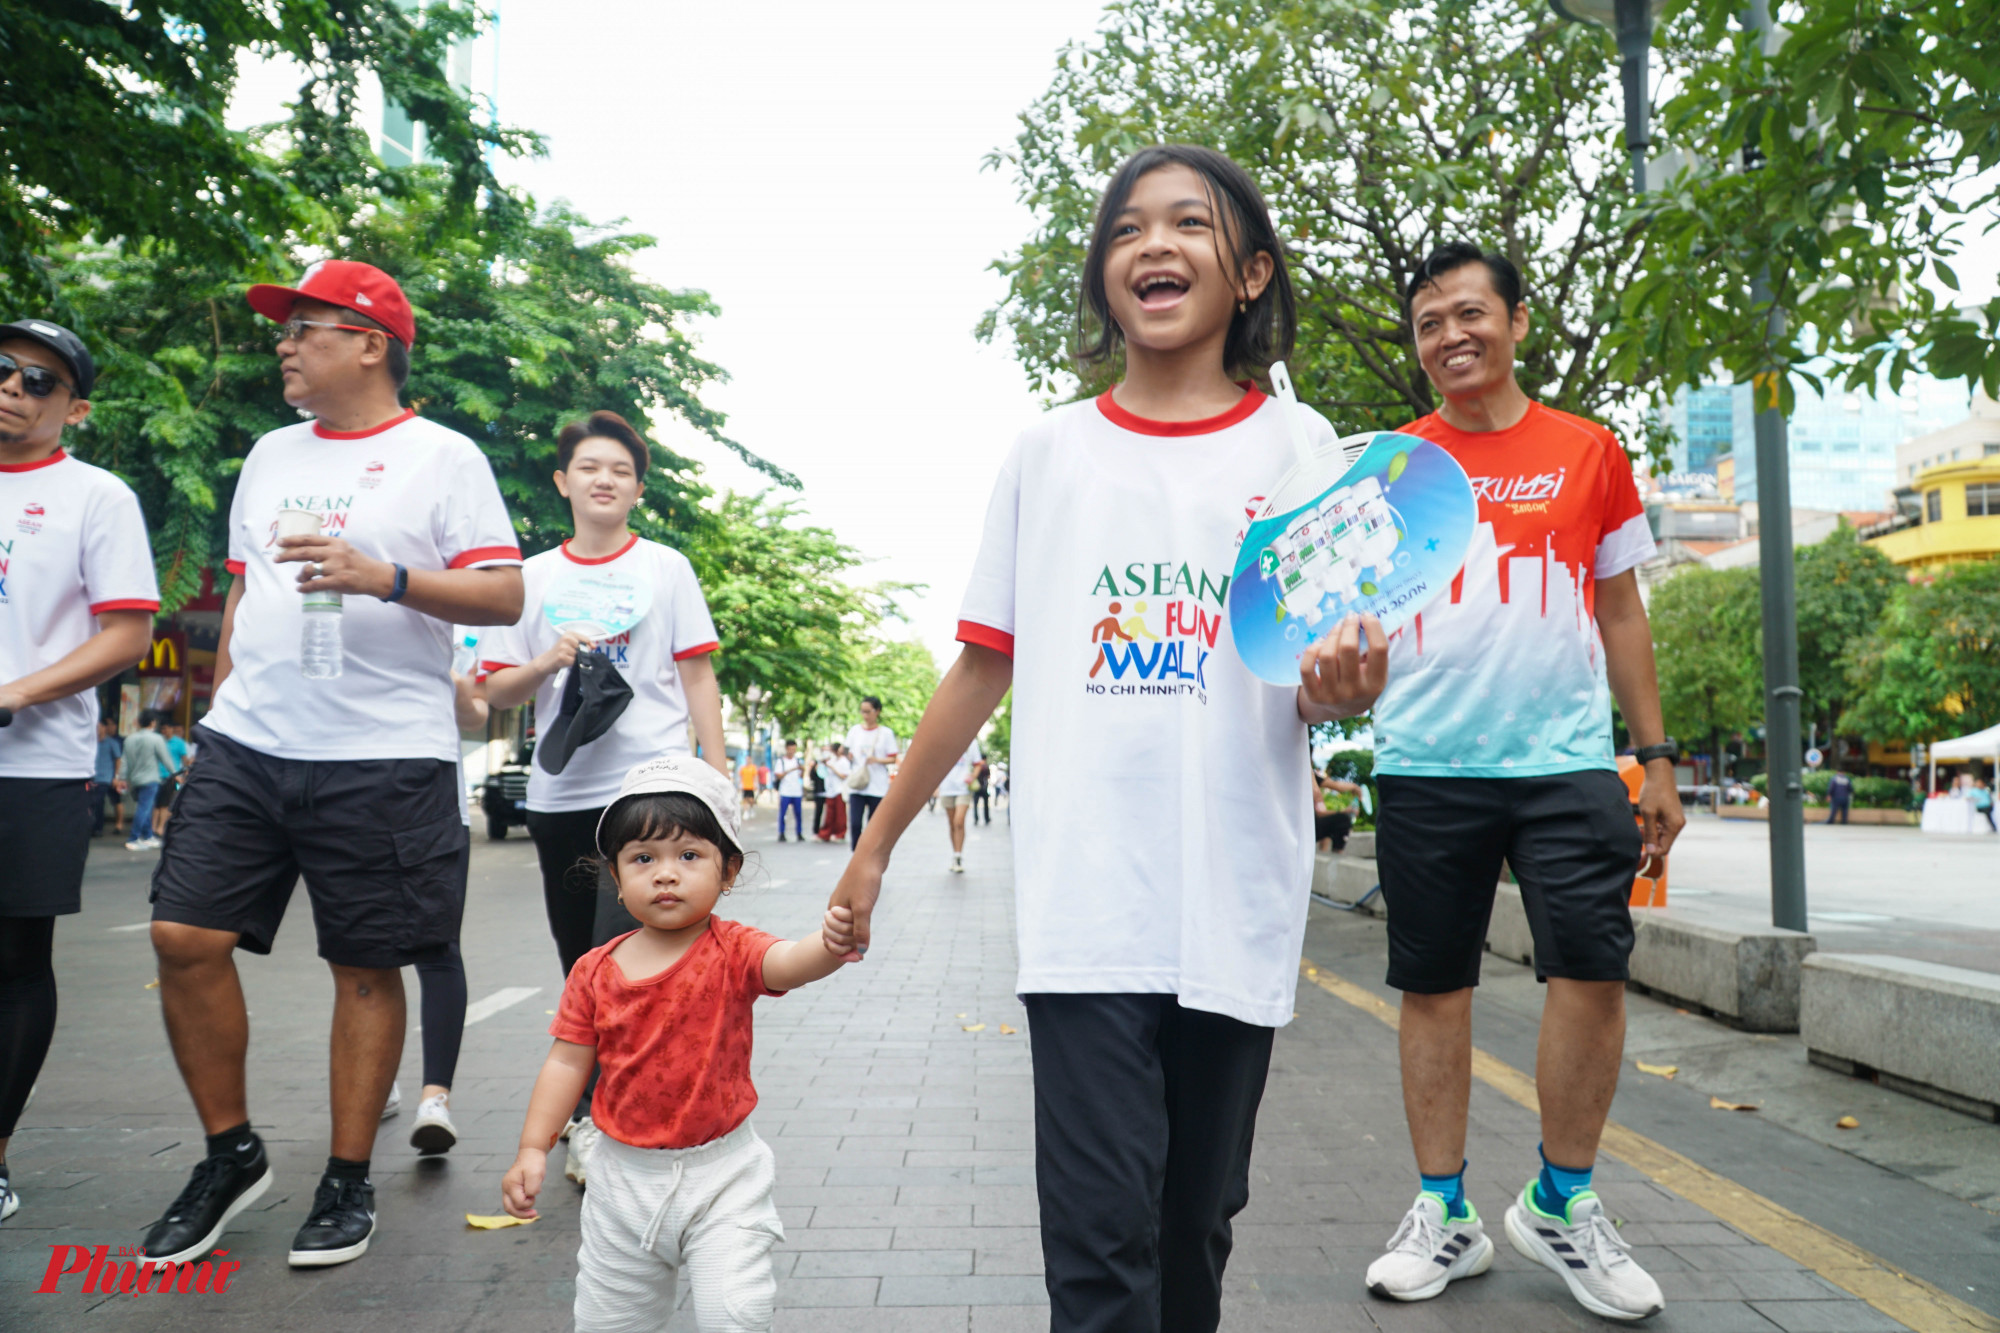 Cộng đồng ASIAN đang sinh sống và làm việc tại TPHCM cũng gia đình cũng tham gia chương trình đi bộ đồng hành sáng nay